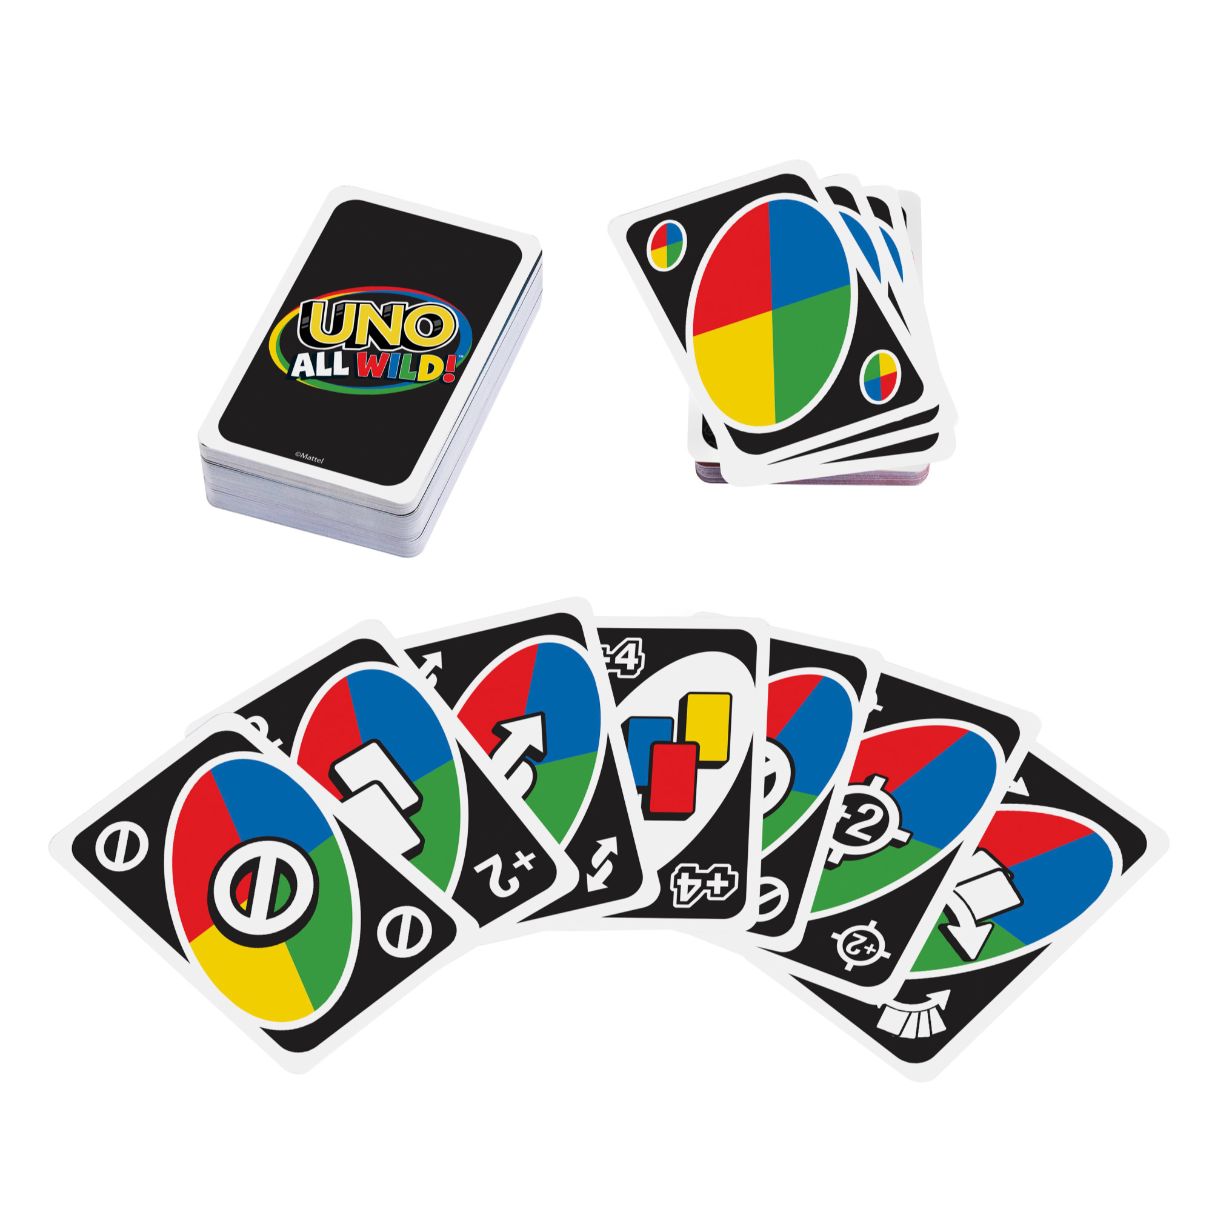 uno all wild juego de cartas (mattel - hhl33 )